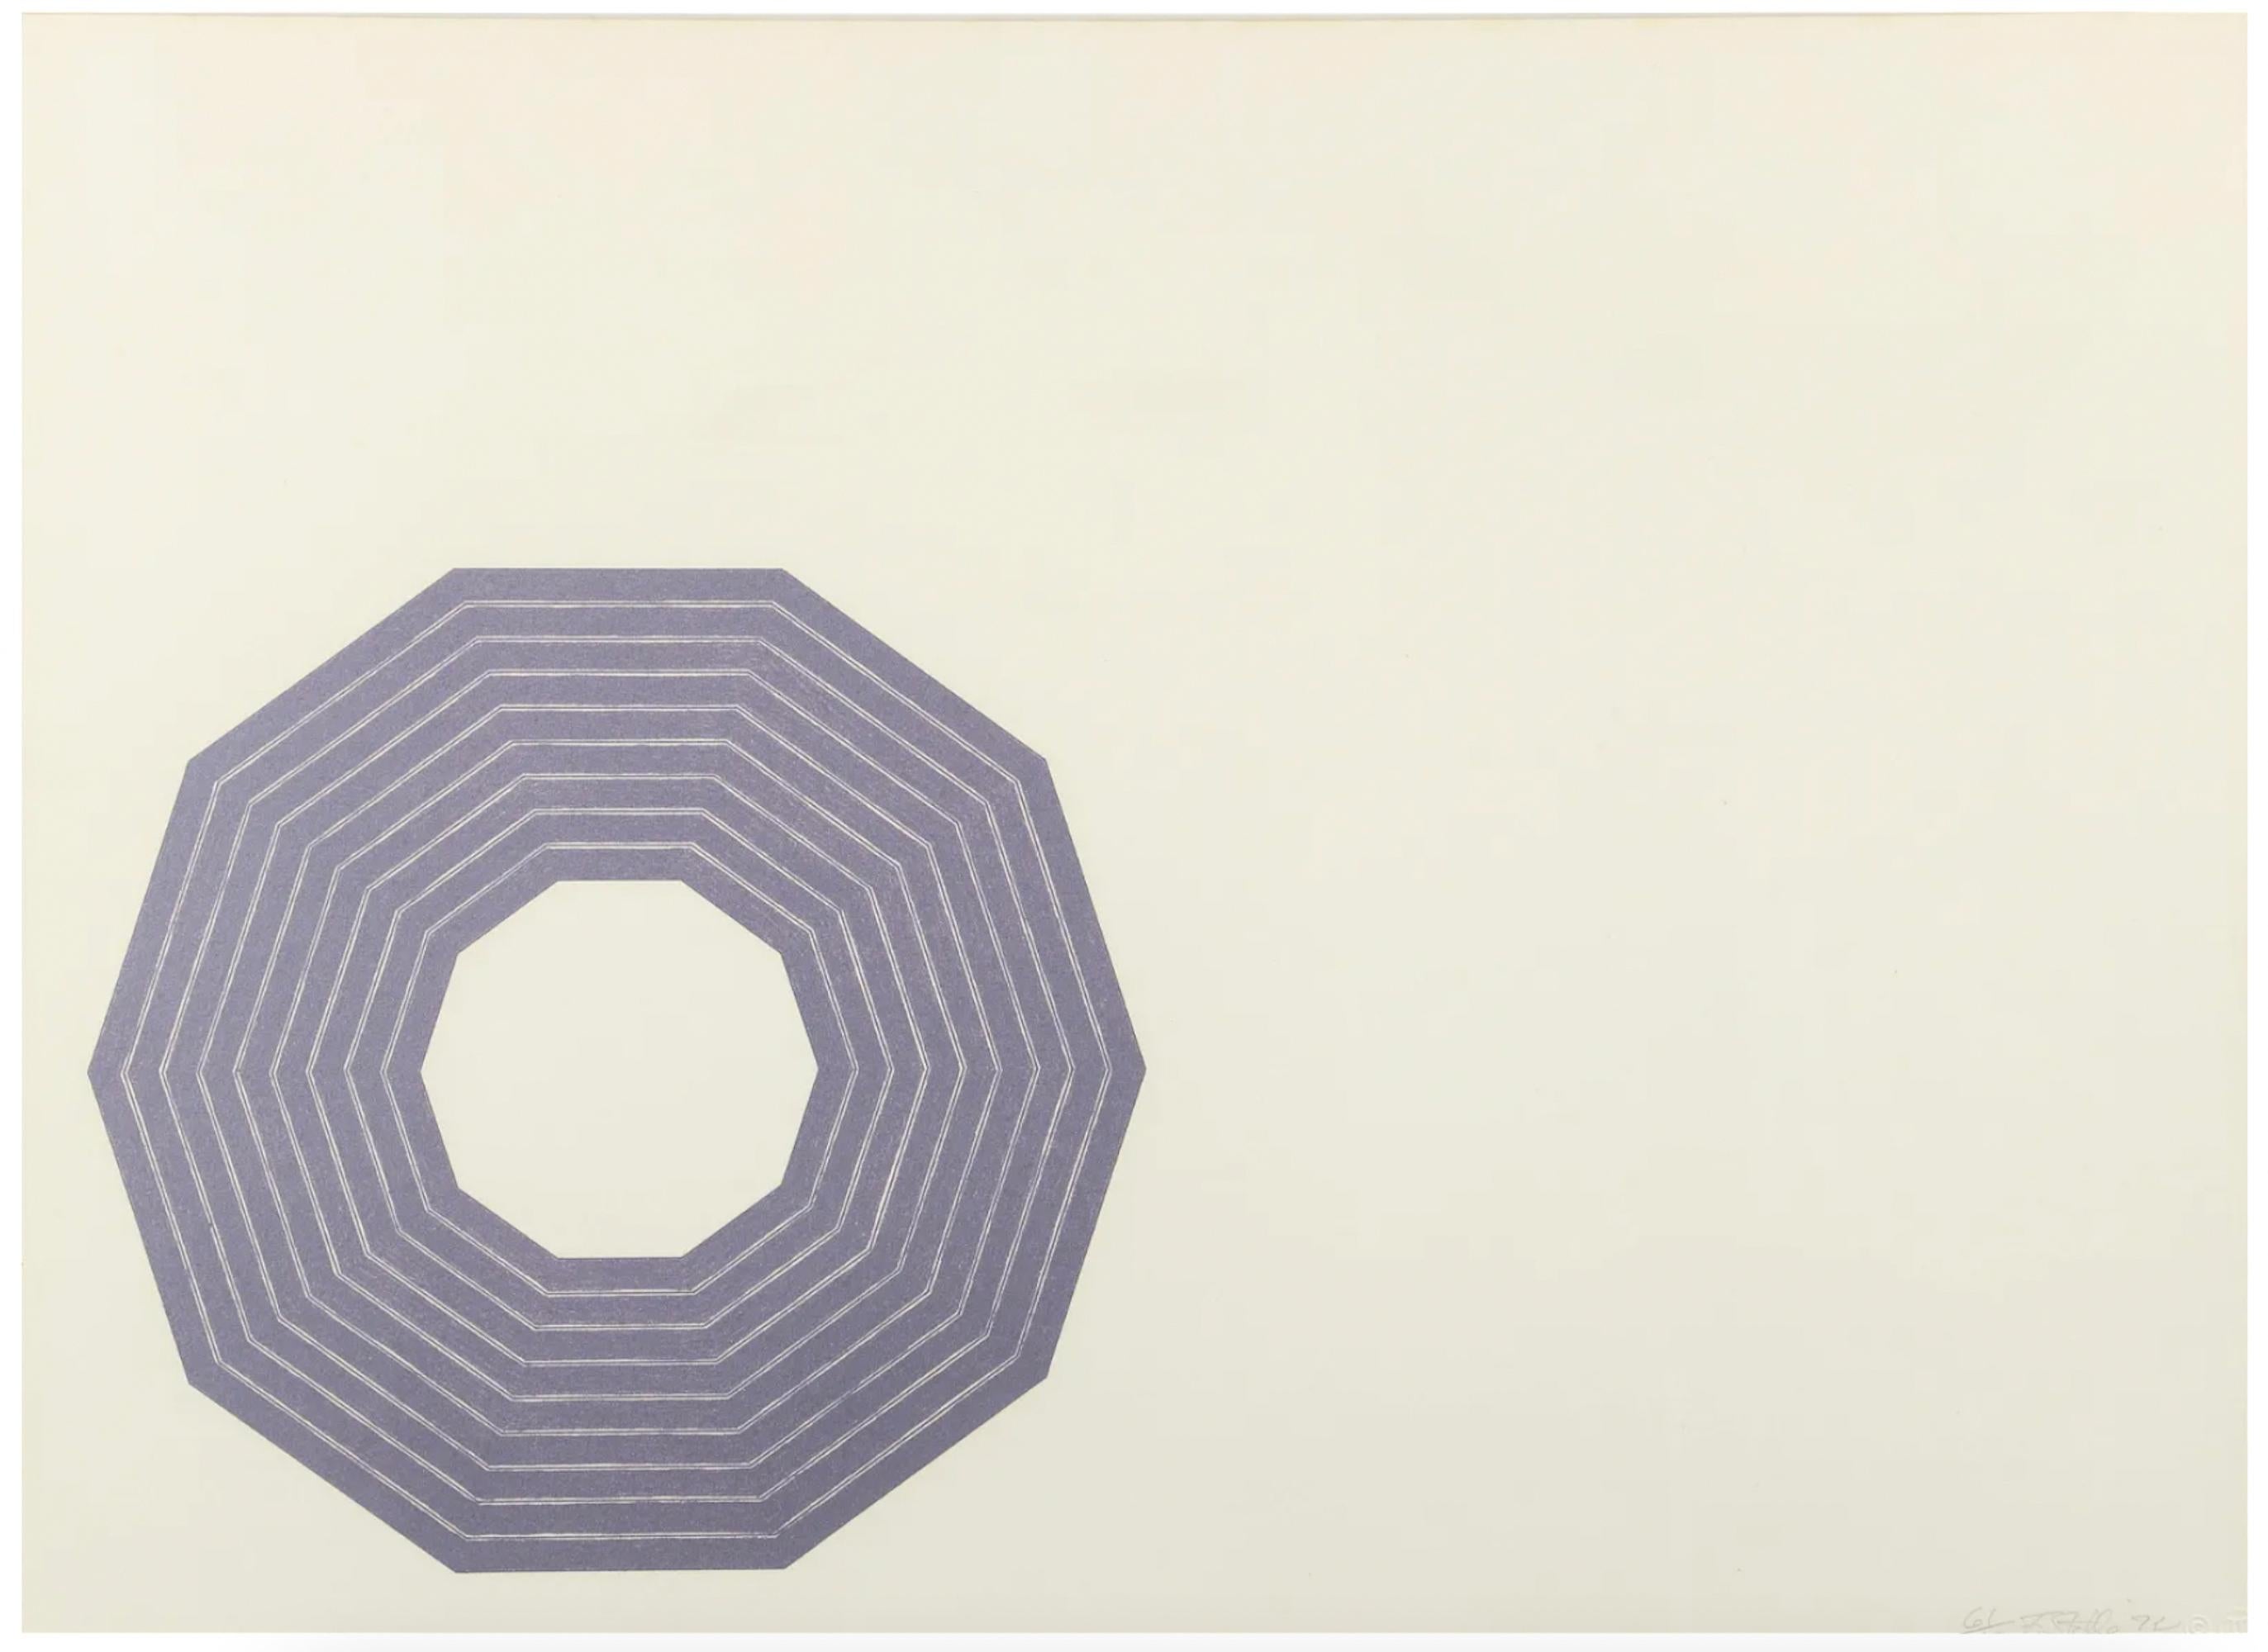 FRANK STELLA (1936-aujourd'hui)

D from Purple Series" de Frank Stella est une lithographie de 1972 sur papier vélin, signée, datée et numérotée 61/100 dans le coin inférieur droit, publiée par Gemini G.E.L. avec leur chop en bas à droite et